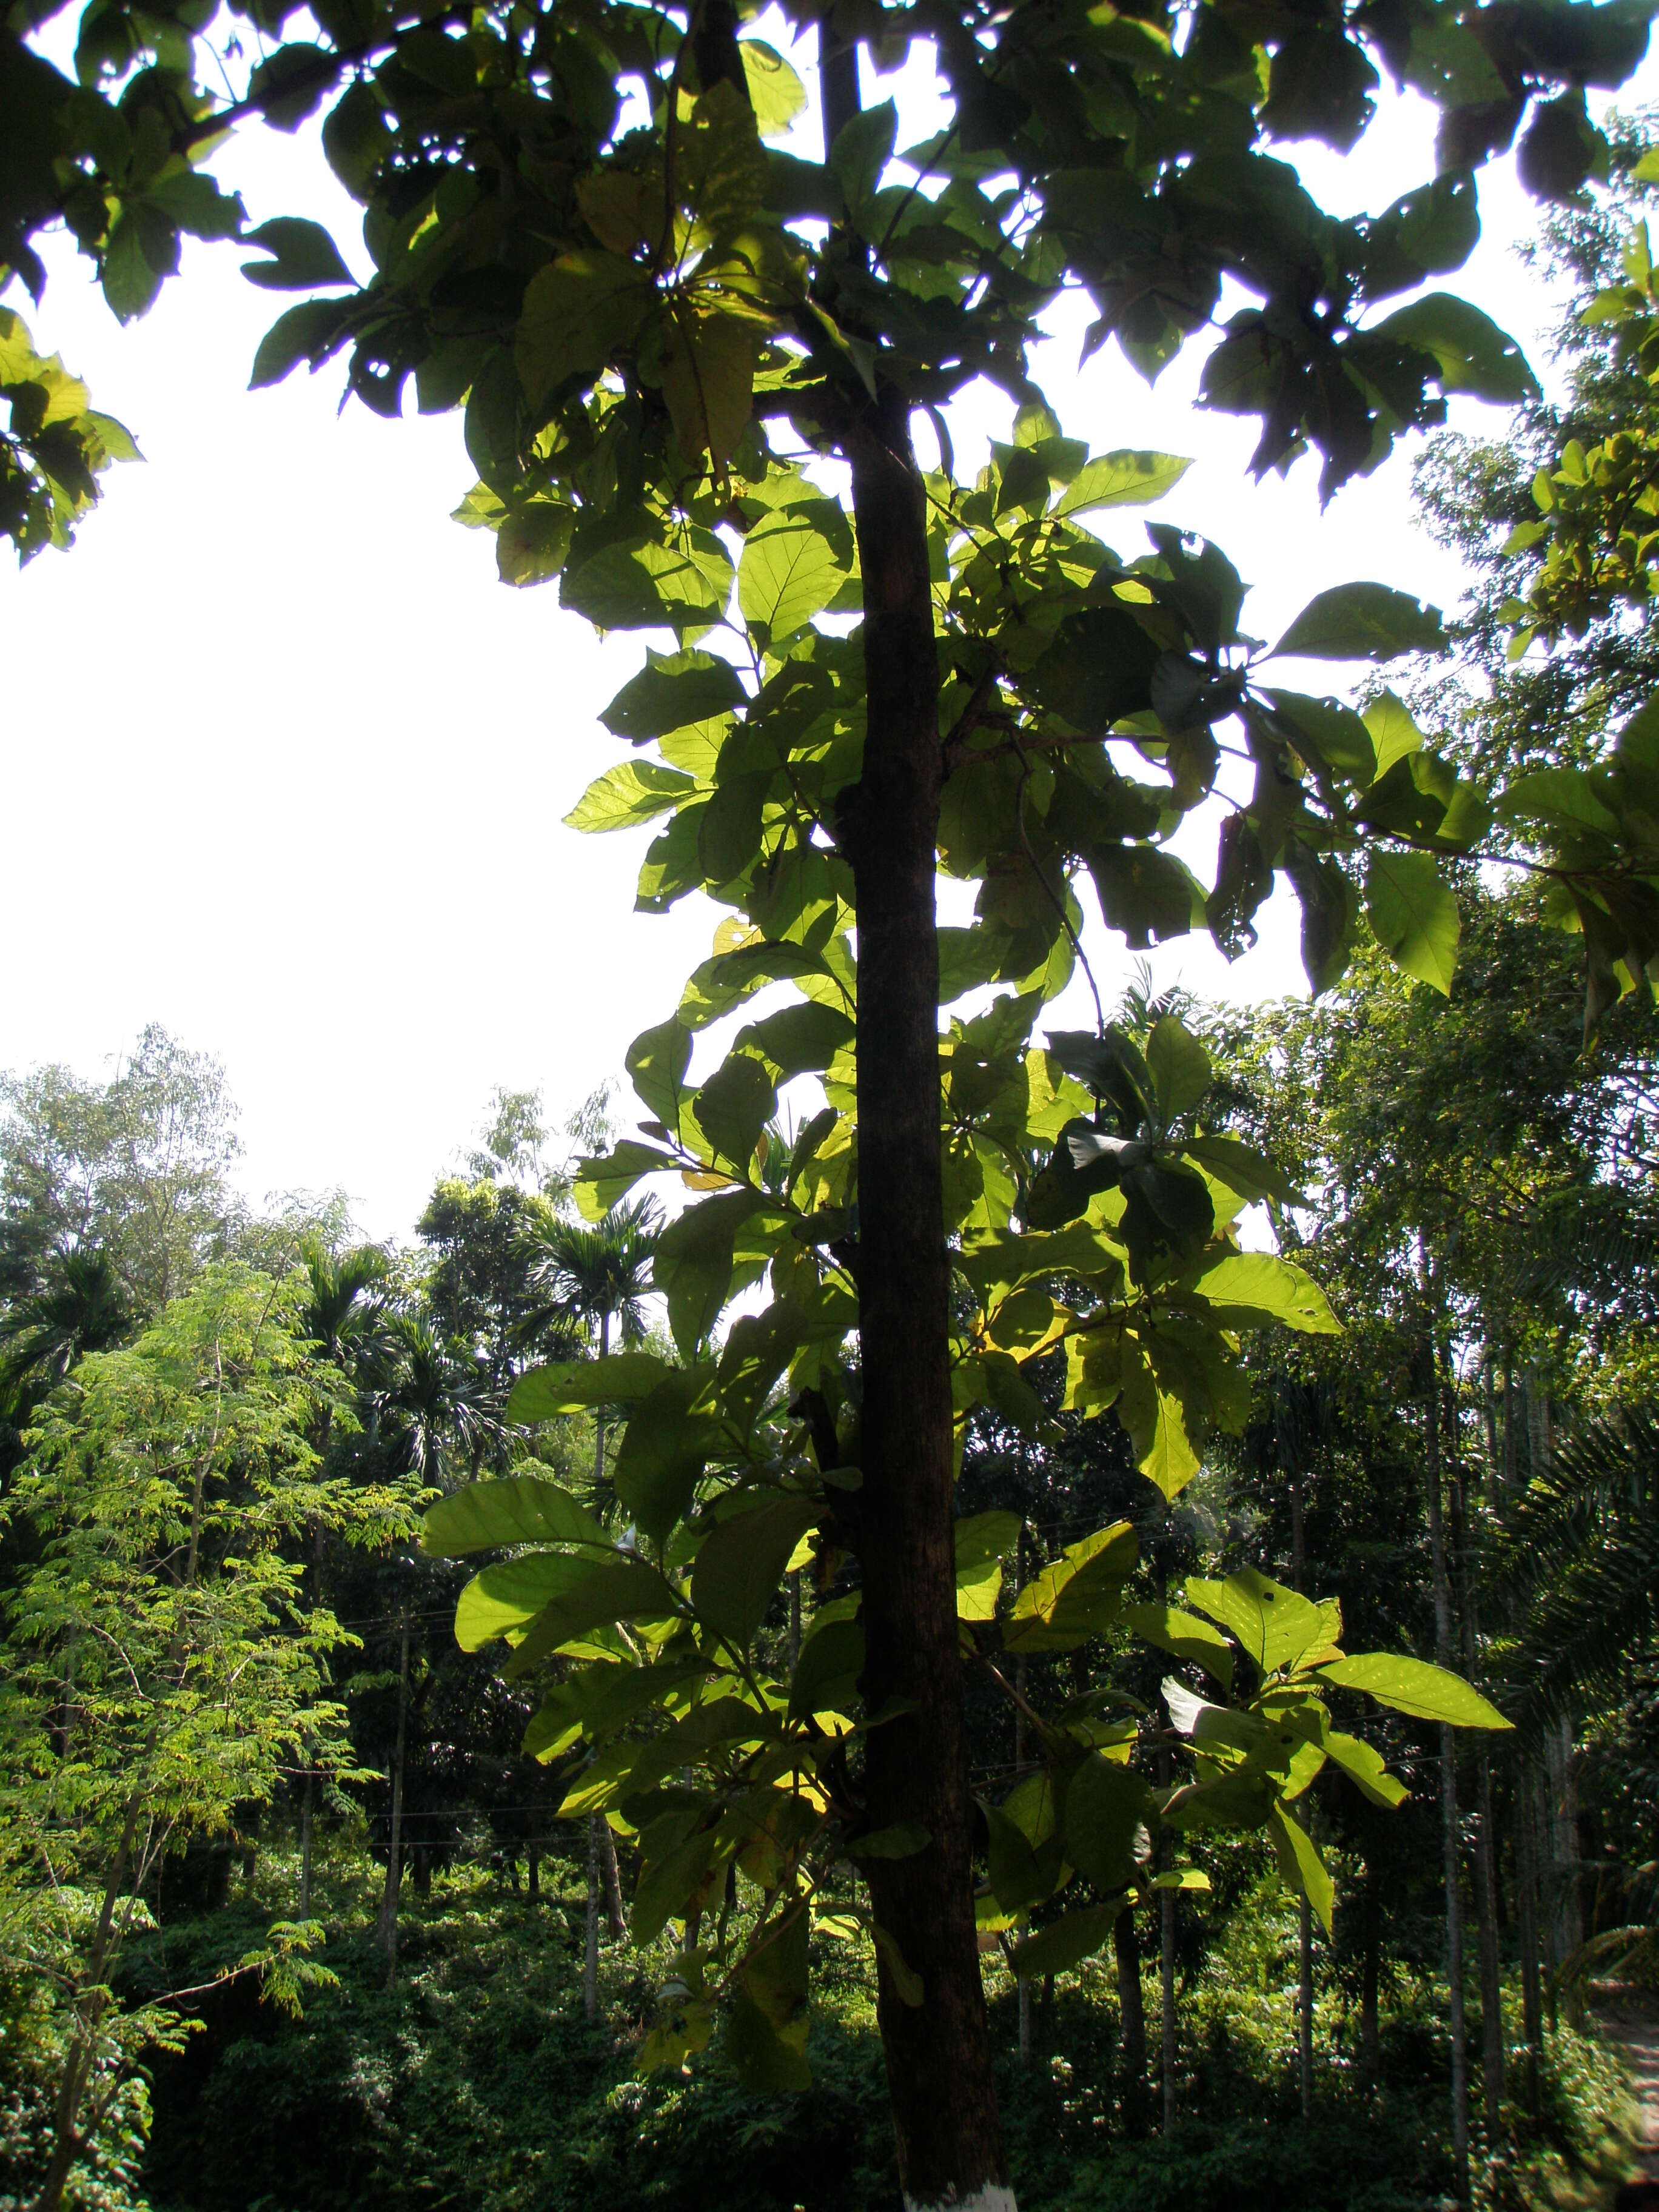 Image of sal tree